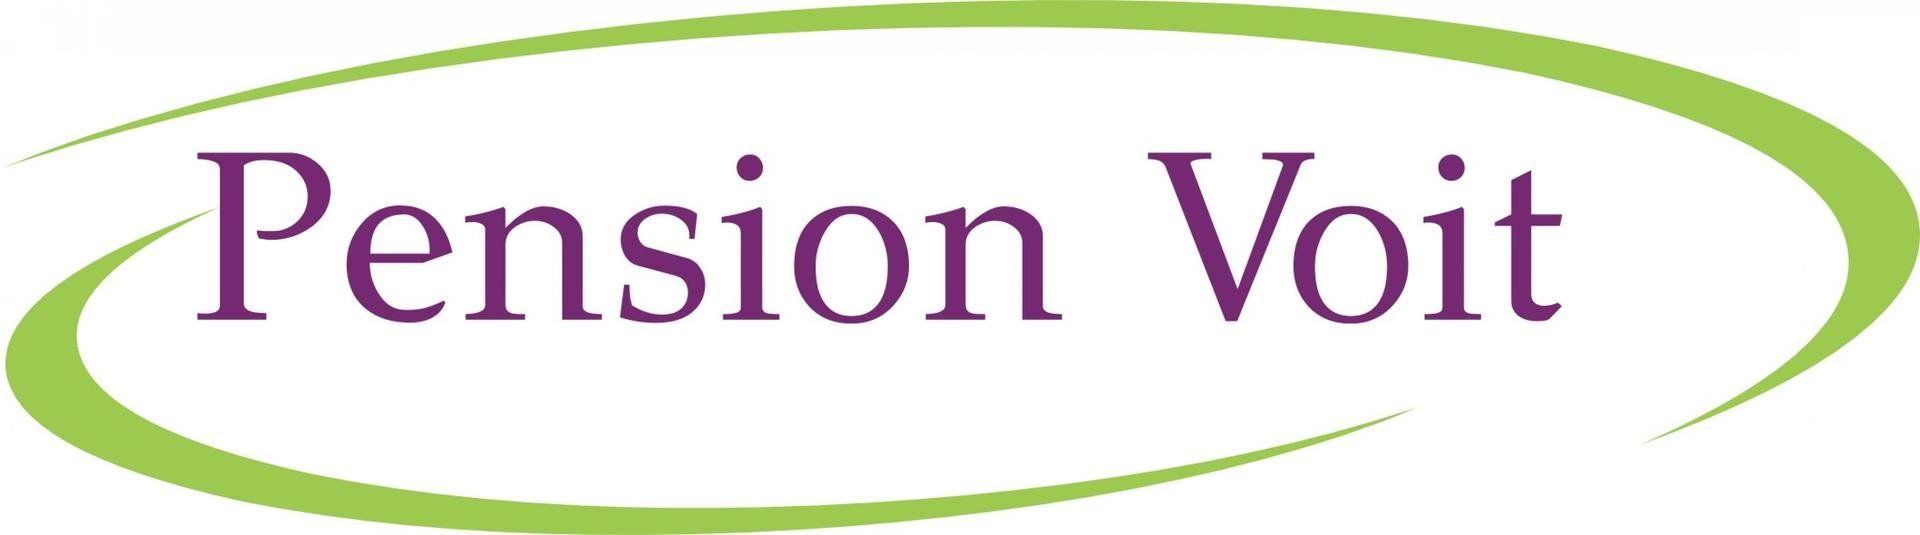 Pension Voit Logo